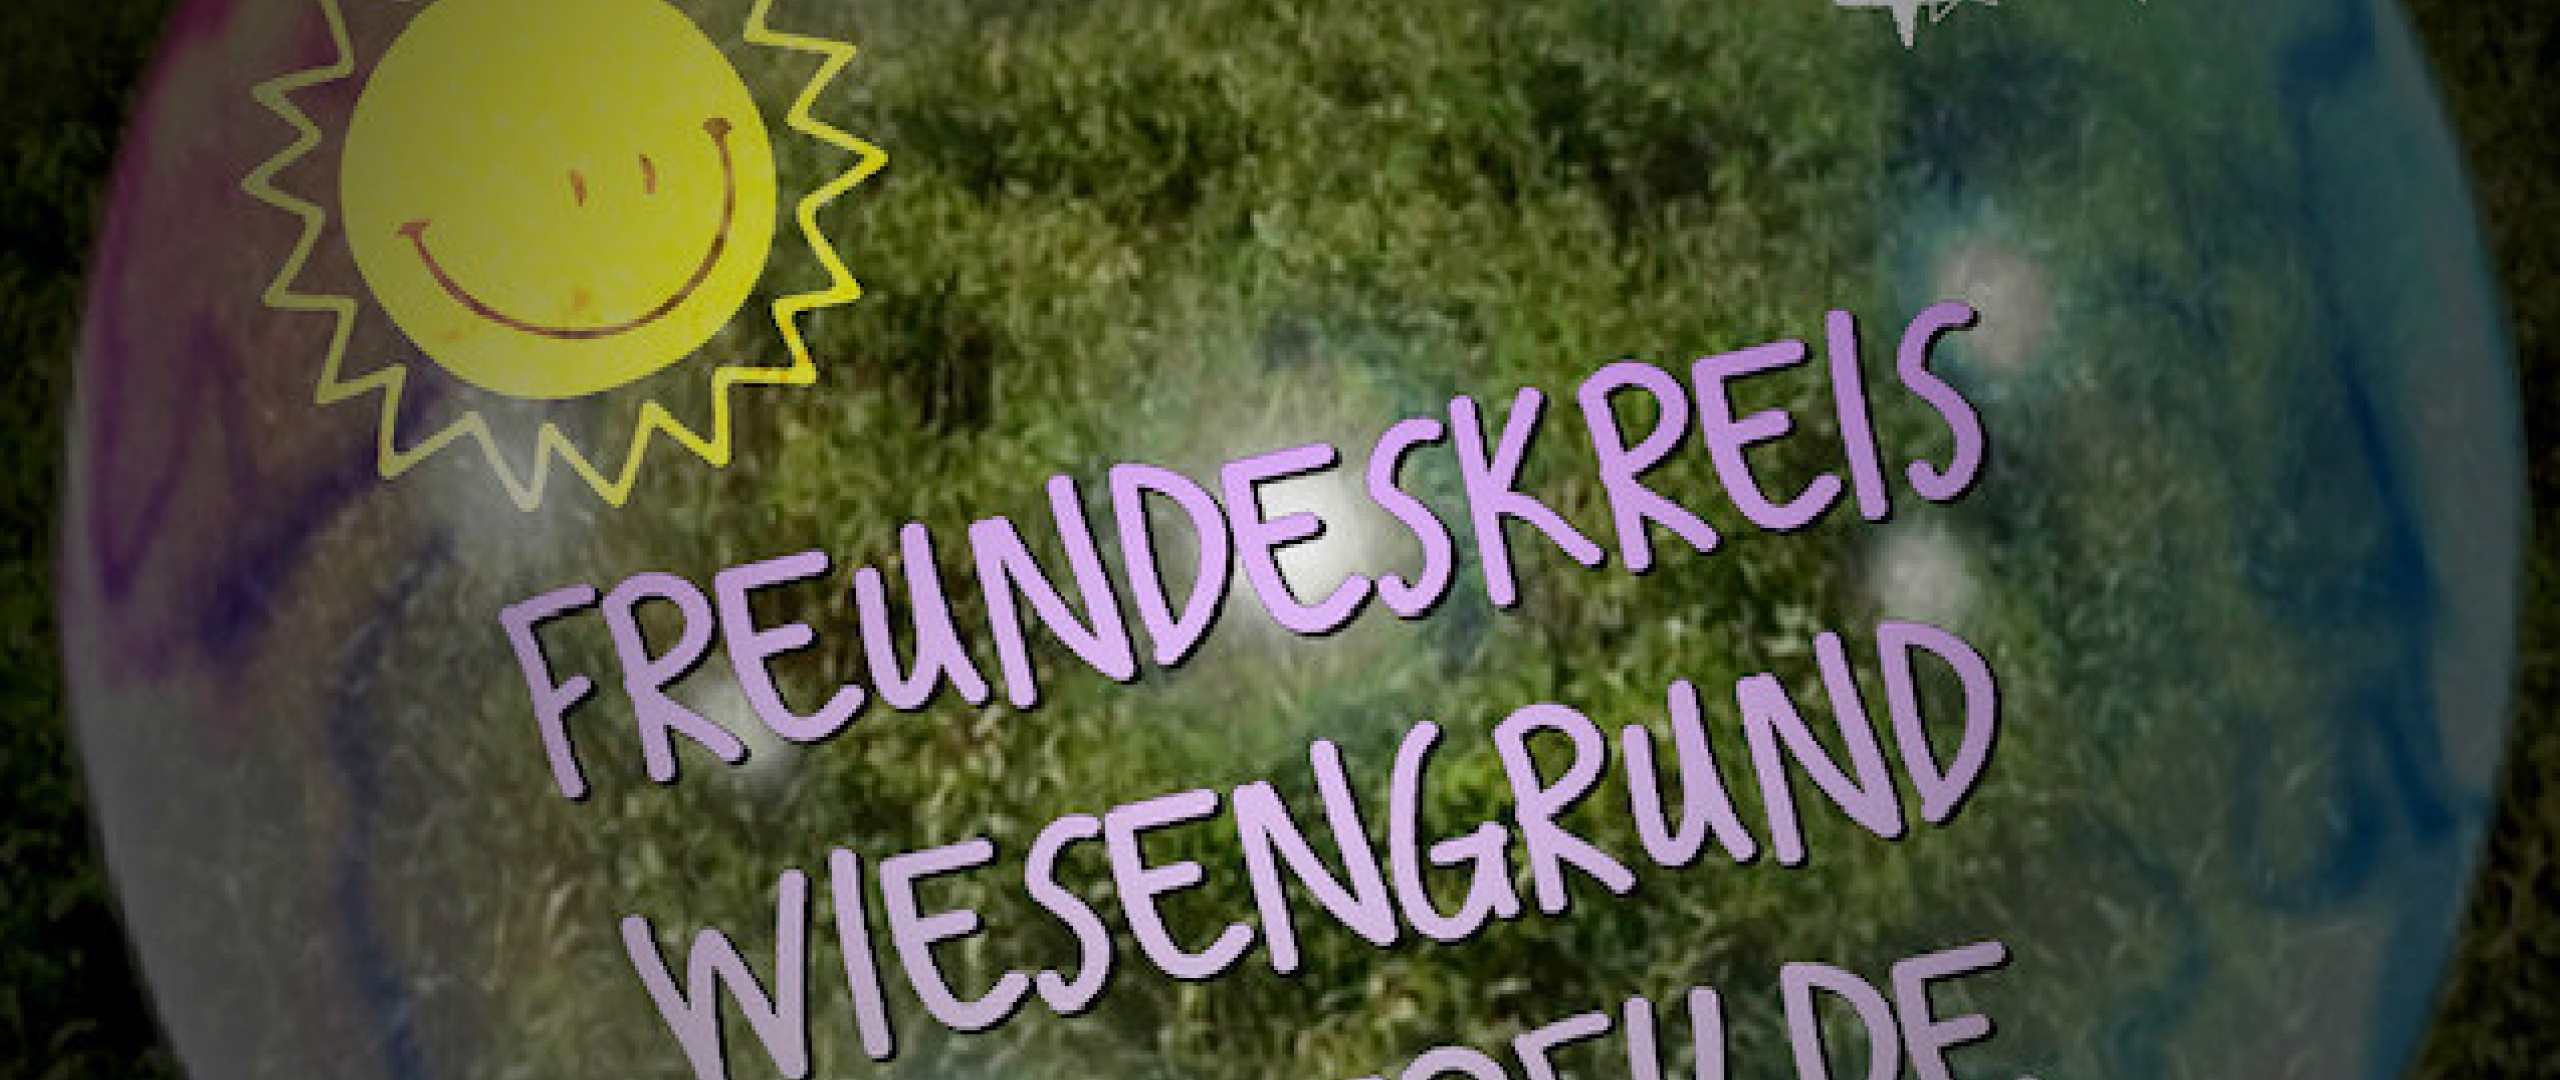 Logo des Freundeskreis Wiesengrund - Westerfilde